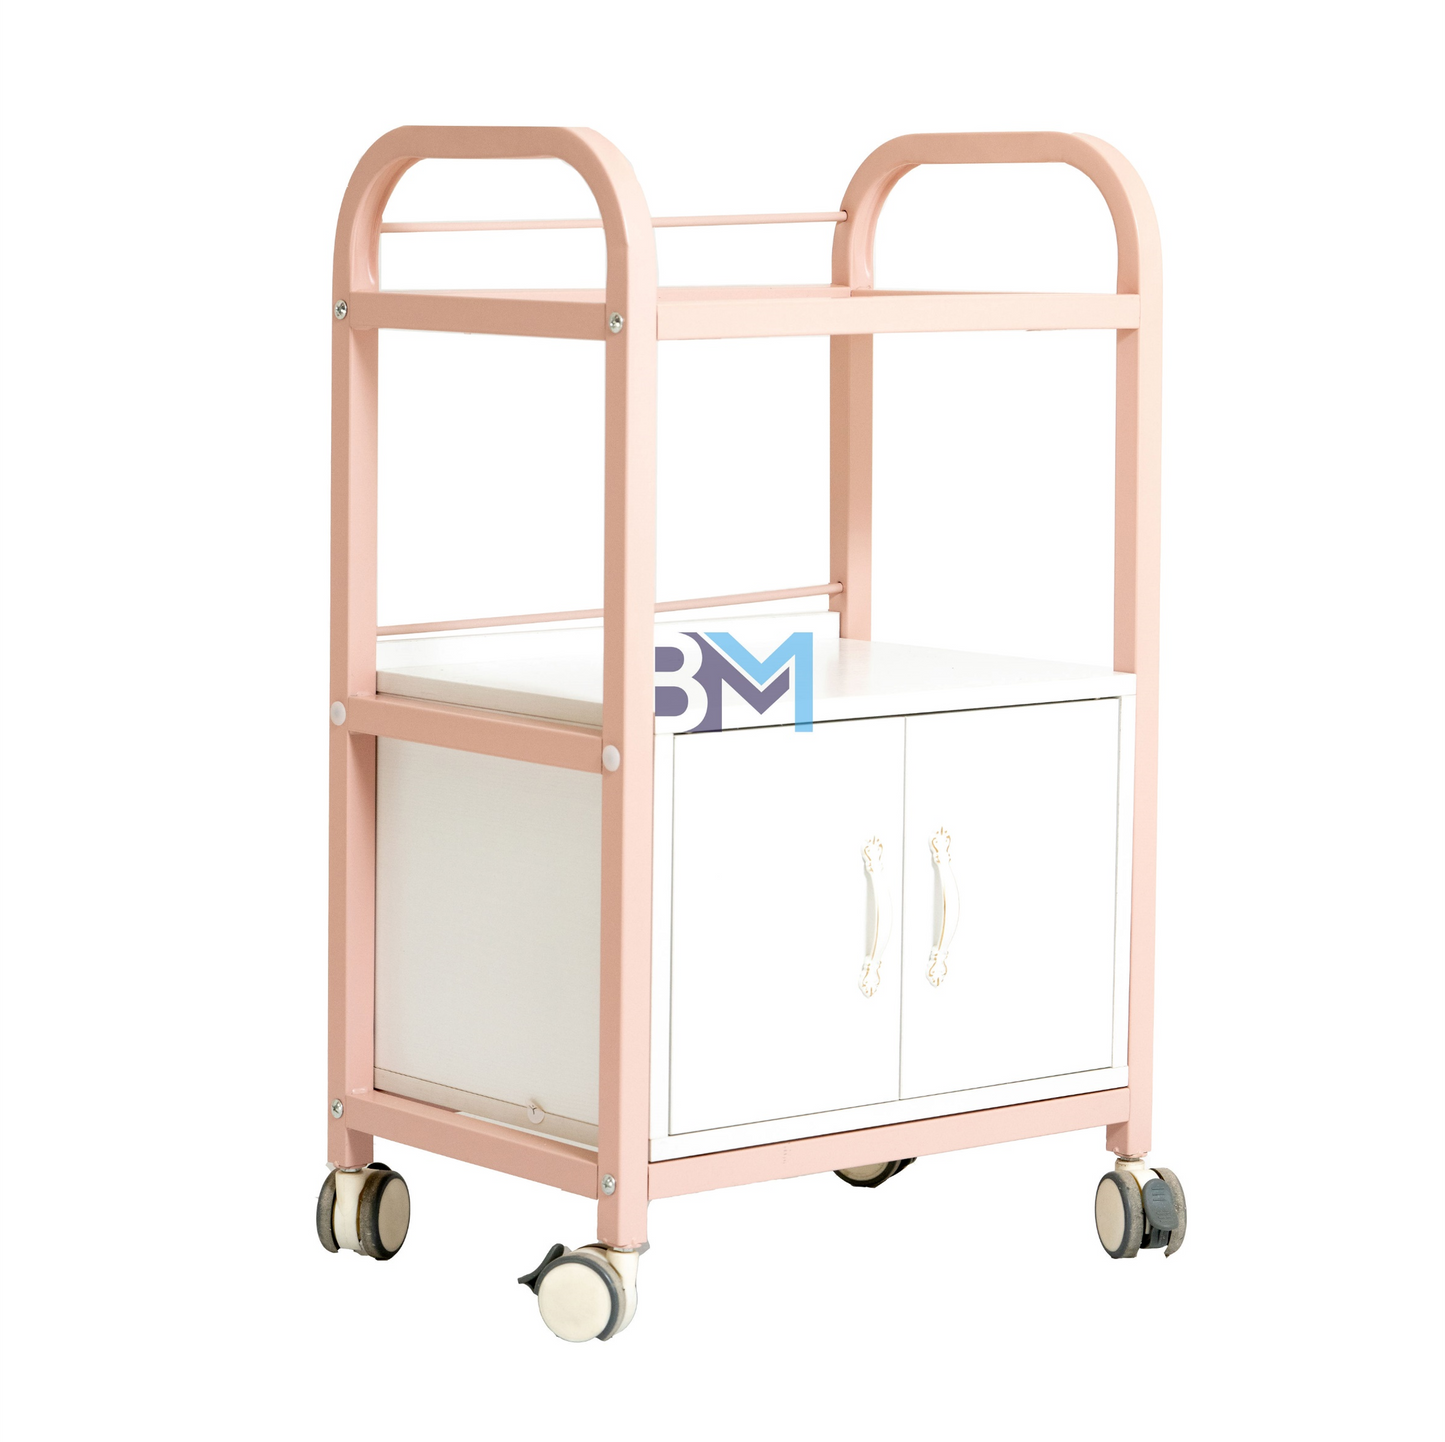 Carrito auxiliar blanco o rosado de madera con dos estantes y un gabinete